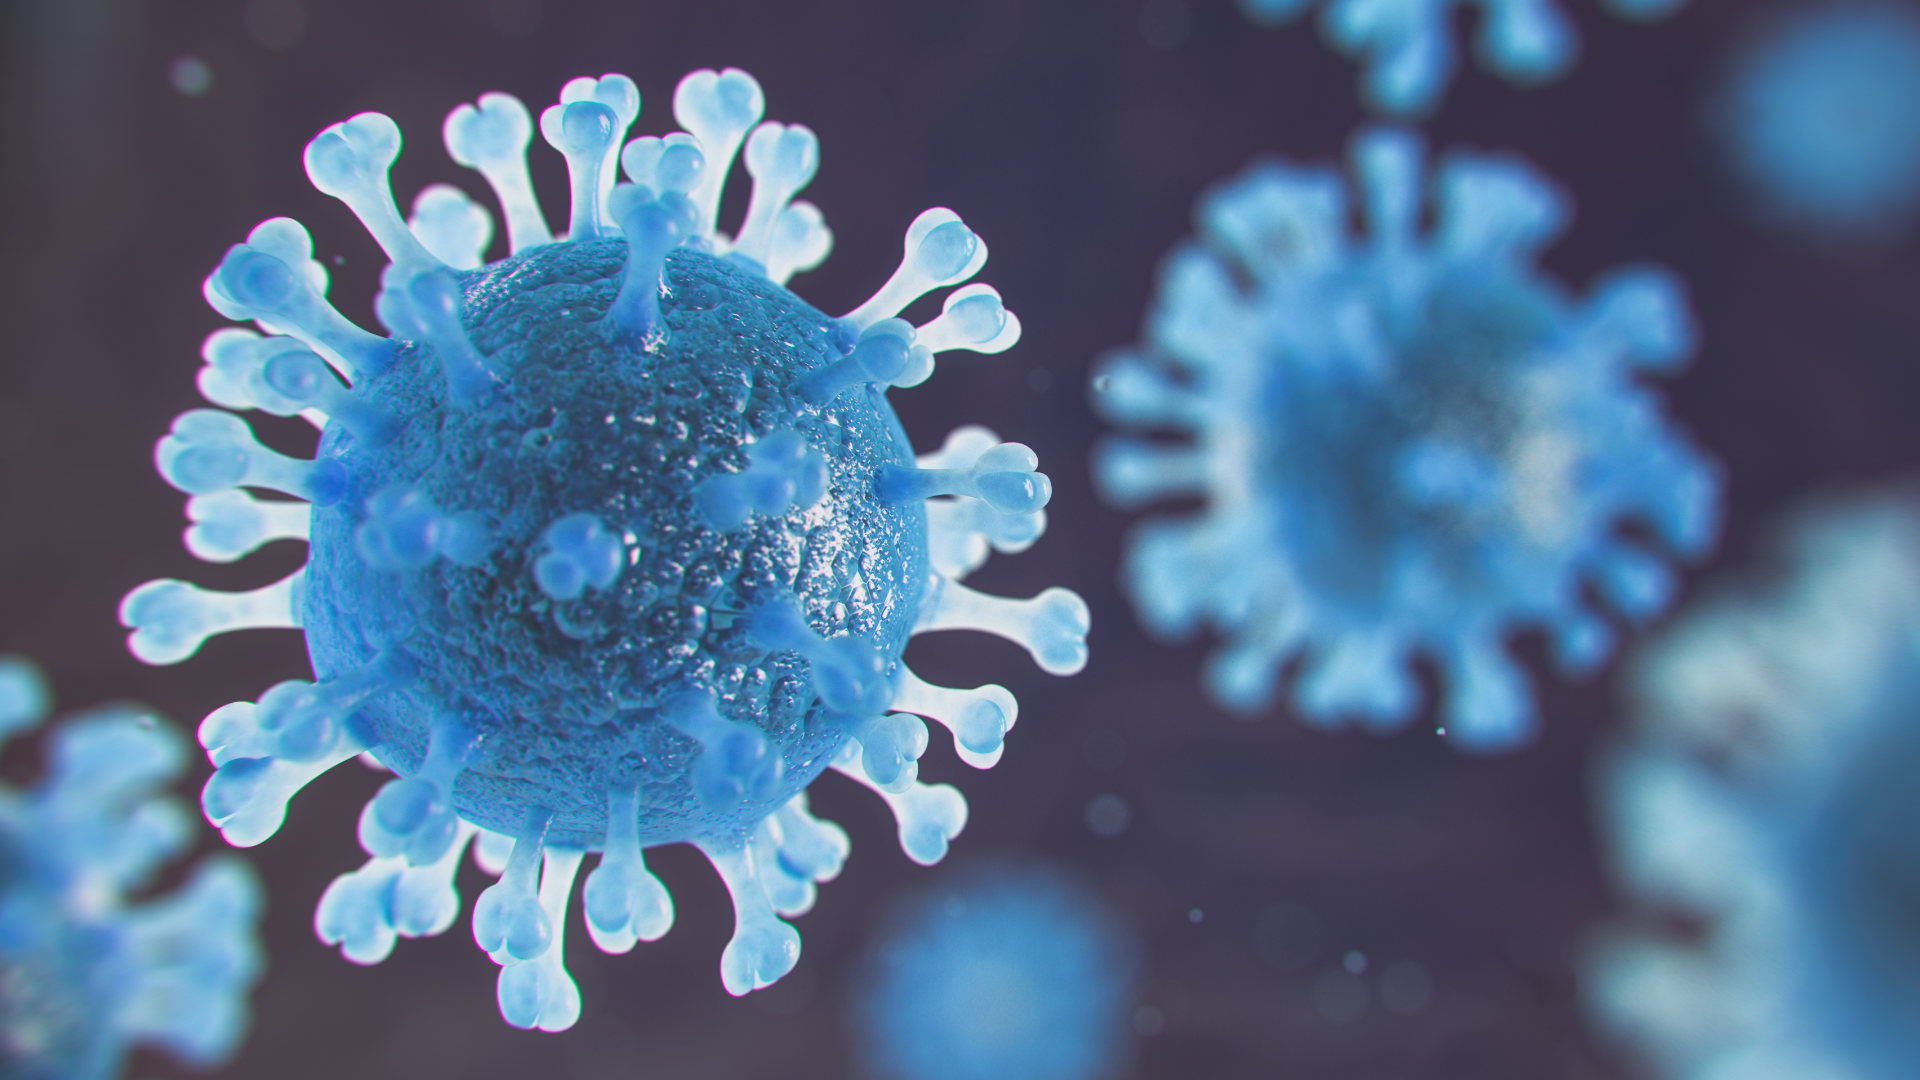 Ha salido un nuevo videojuego gratuito donde se puede vencer al coronavirus